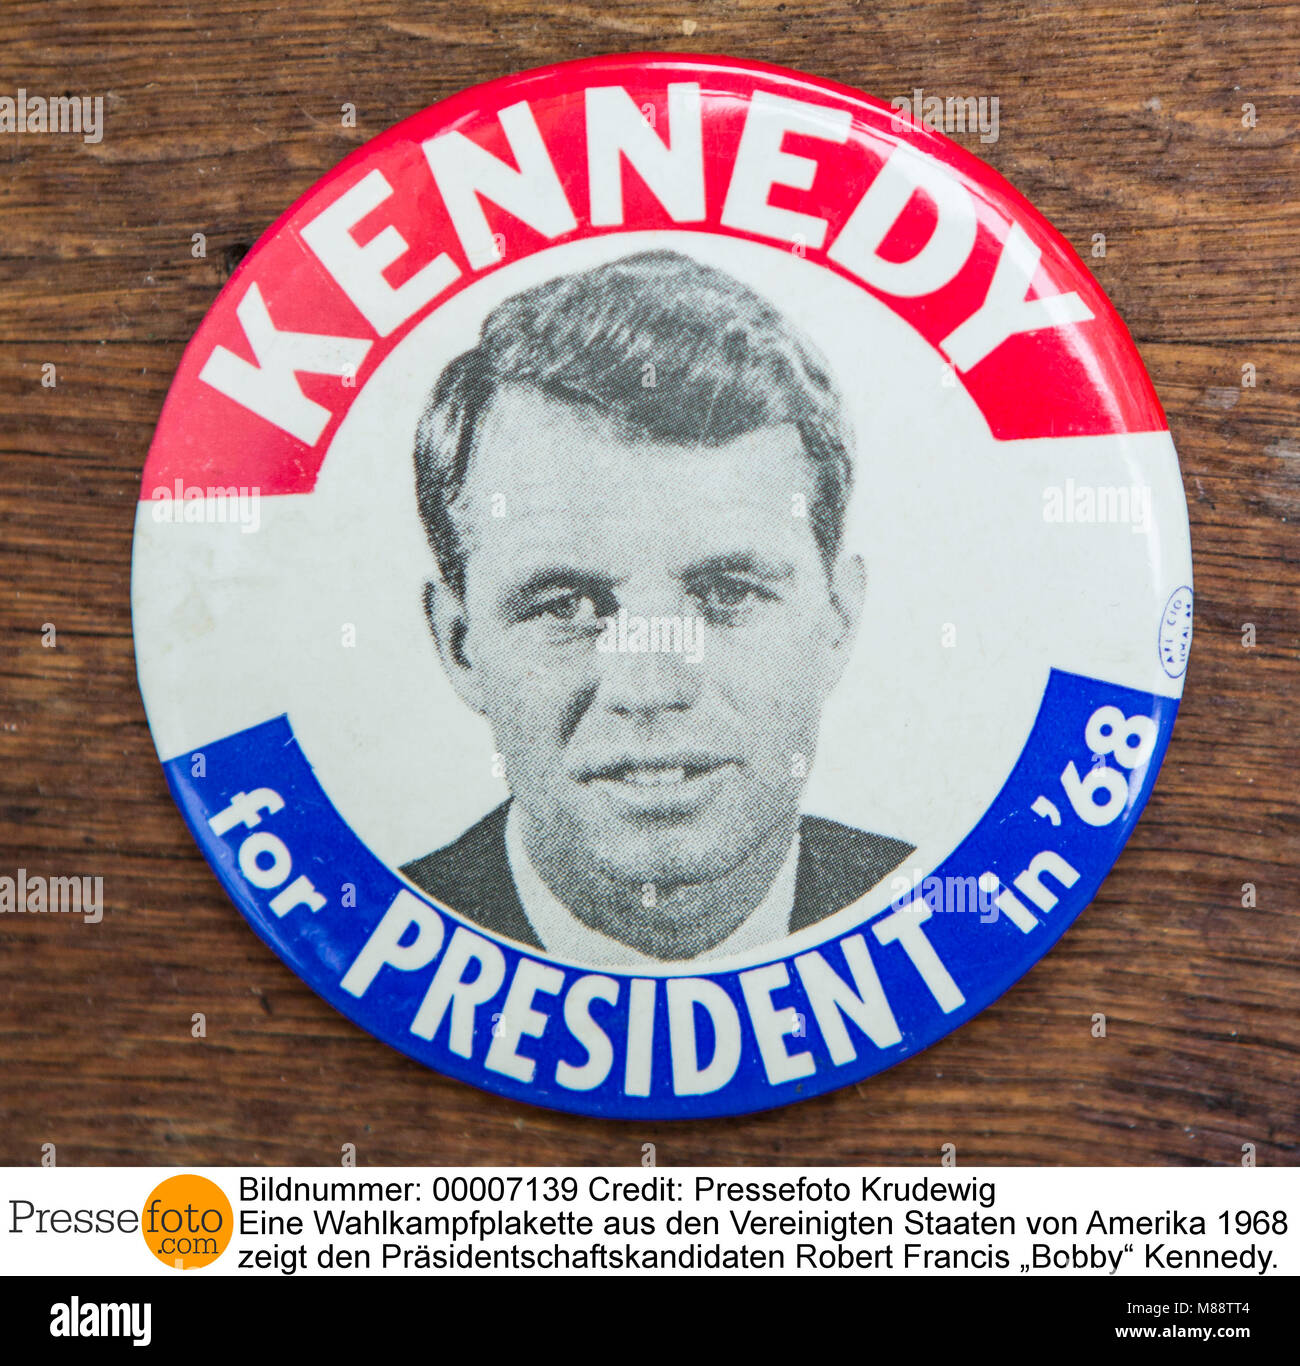 Eine Wahlkampfplakette aus den Vereinigten Staaten von Amerika 1968 zeigt den Präsidentschaftskandidaten Robert Francis ?Bobby? Kennedy. Der jüngere B Stock Photo